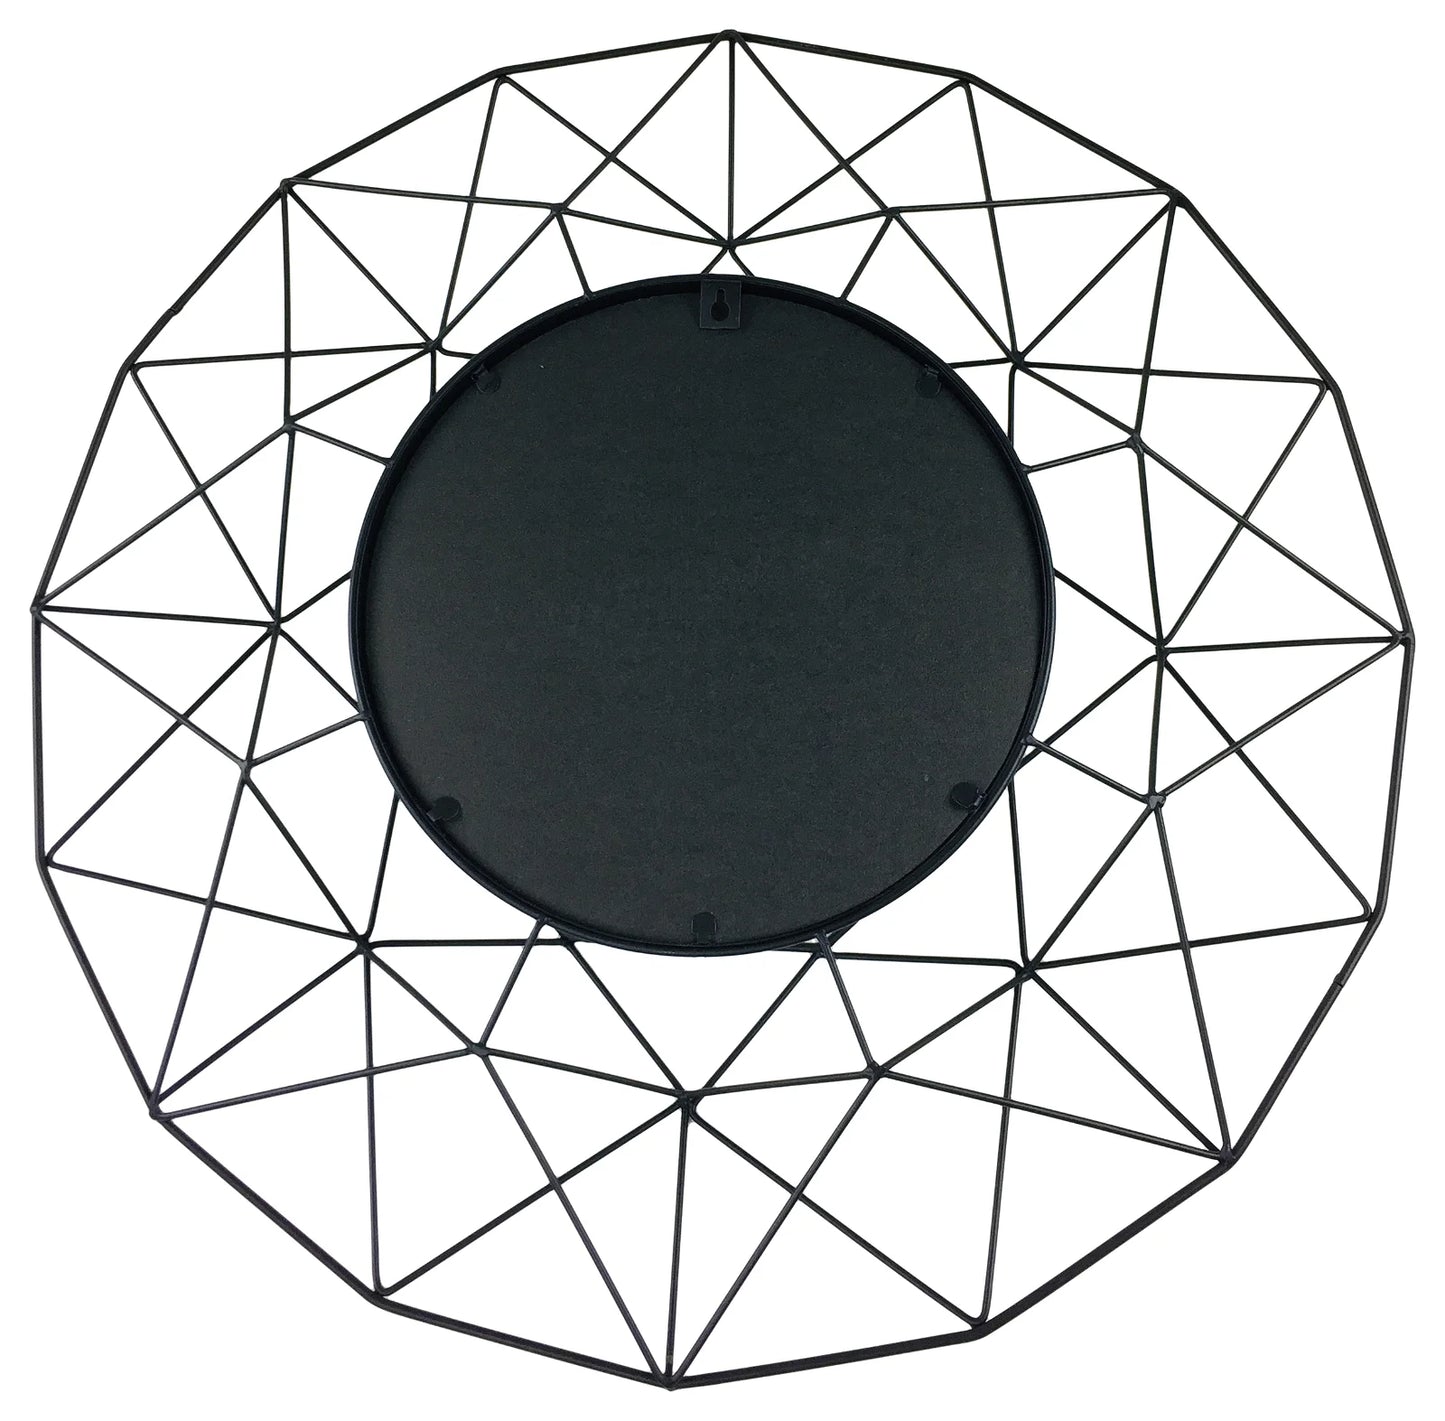 Geometric Mirror in Black